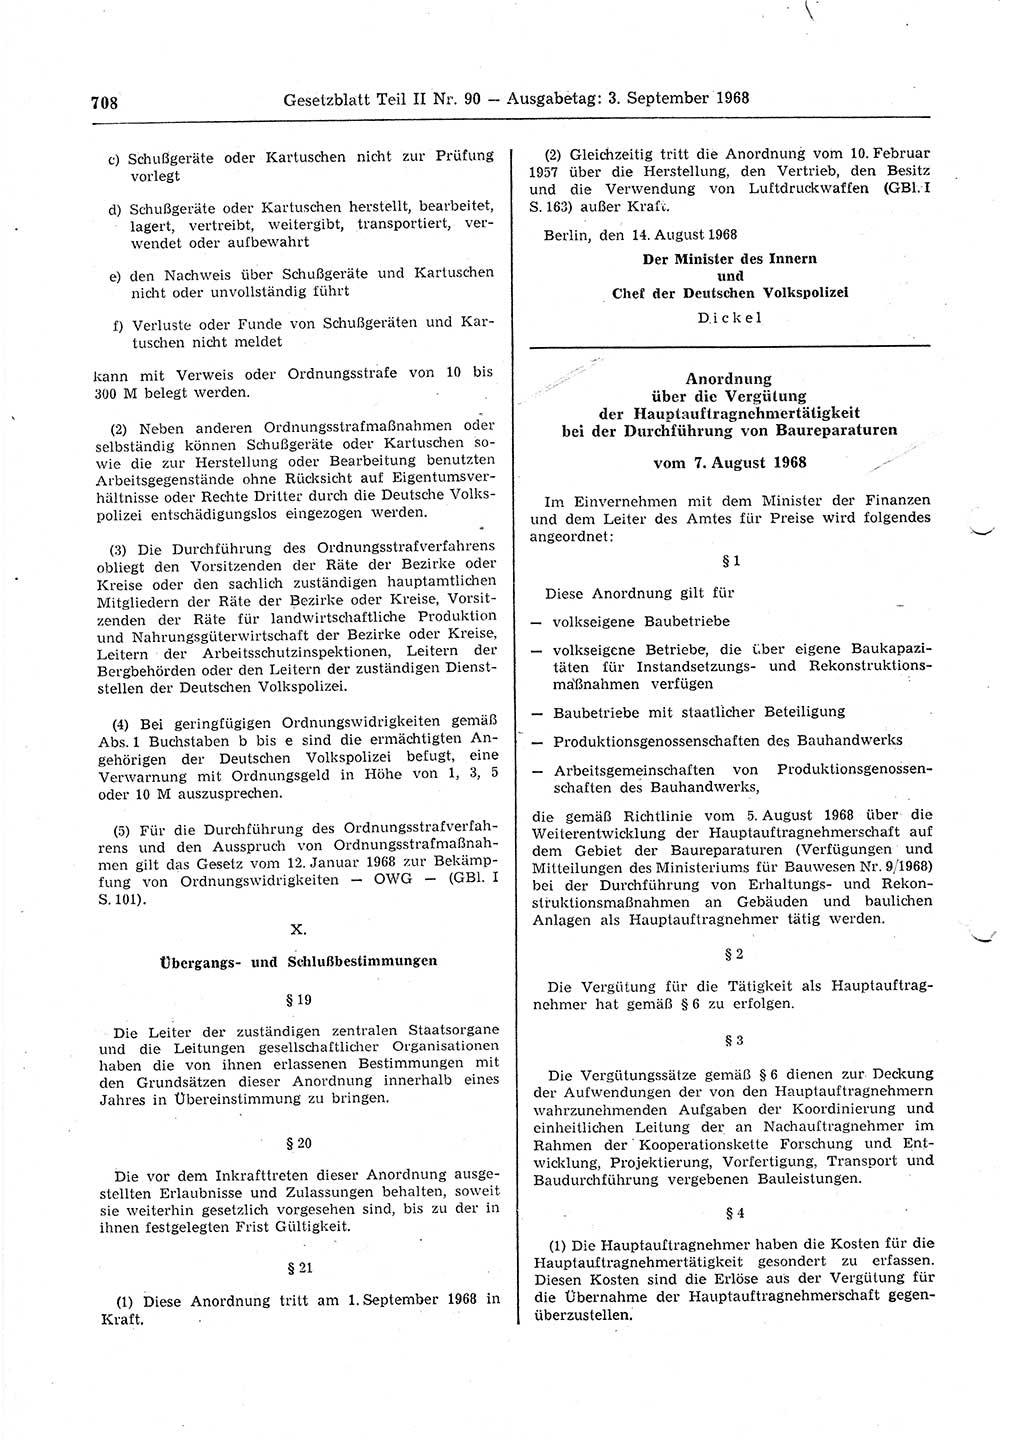 Gesetzblatt (GBl.) der Deutschen Demokratischen Republik (DDR) Teil ⅠⅠ 1968, Seite 708 (GBl. DDR ⅠⅠ 1968, S. 708)